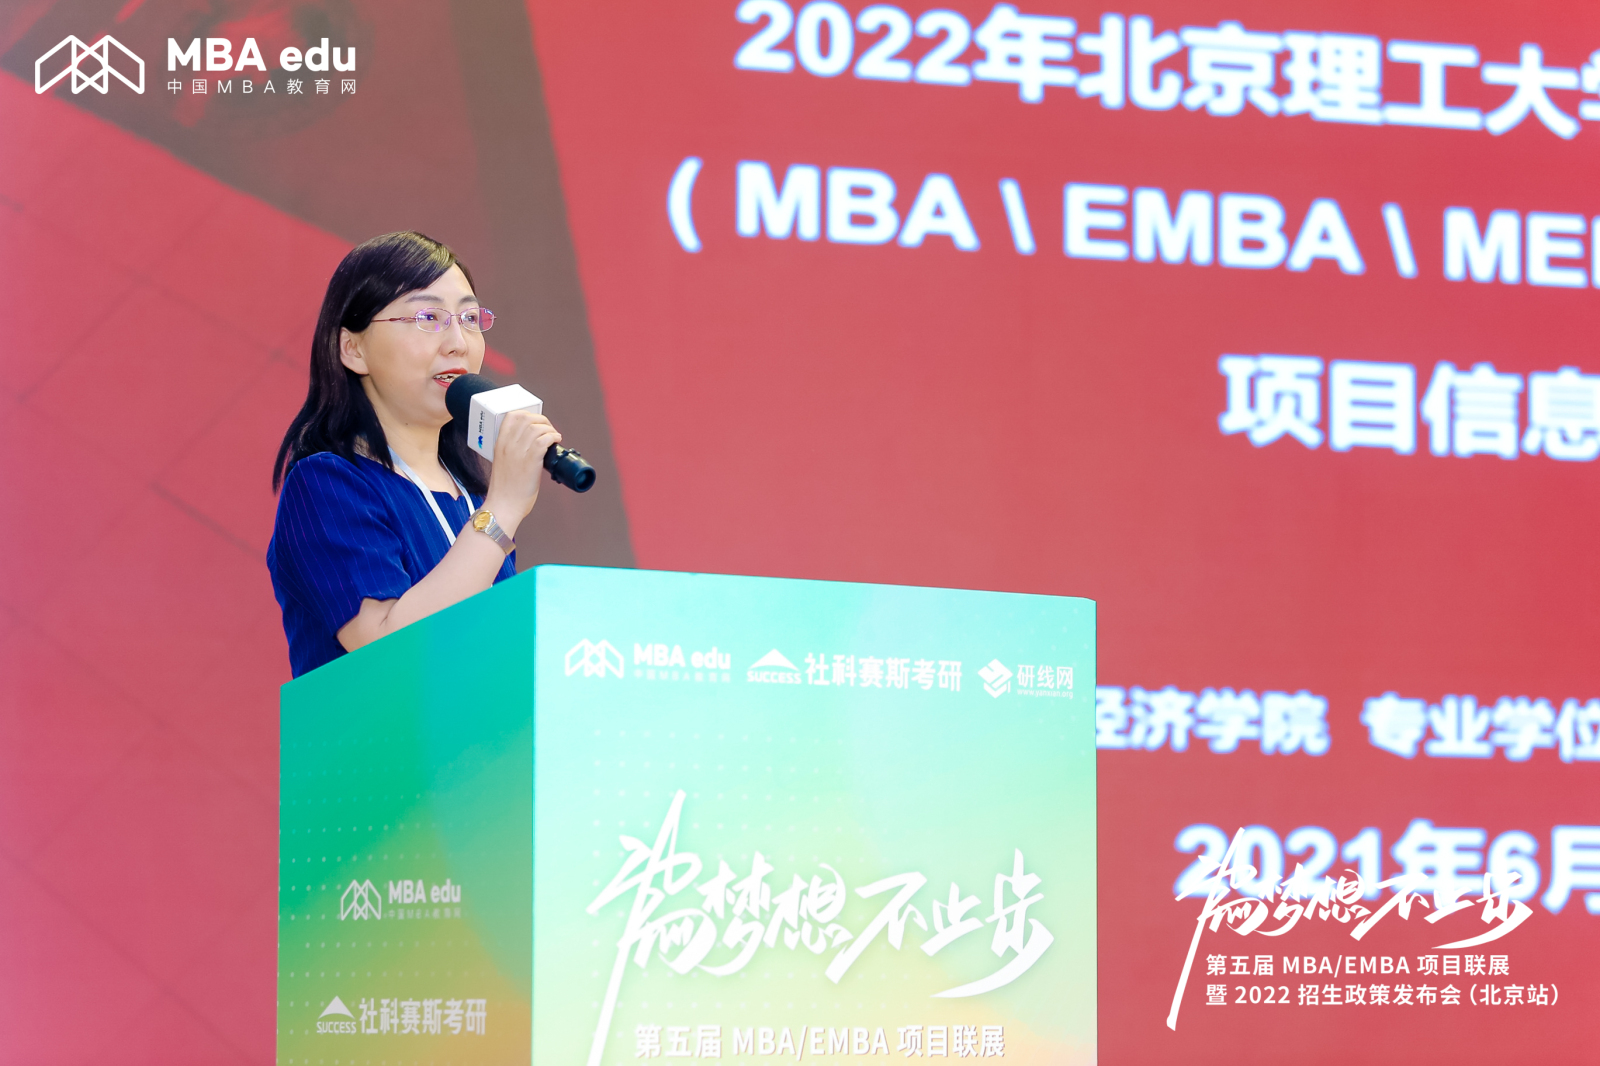 北京理工大学管理与经济学院专业学位教育联合中心应邀出席第五届MBA项目联展（北京站）